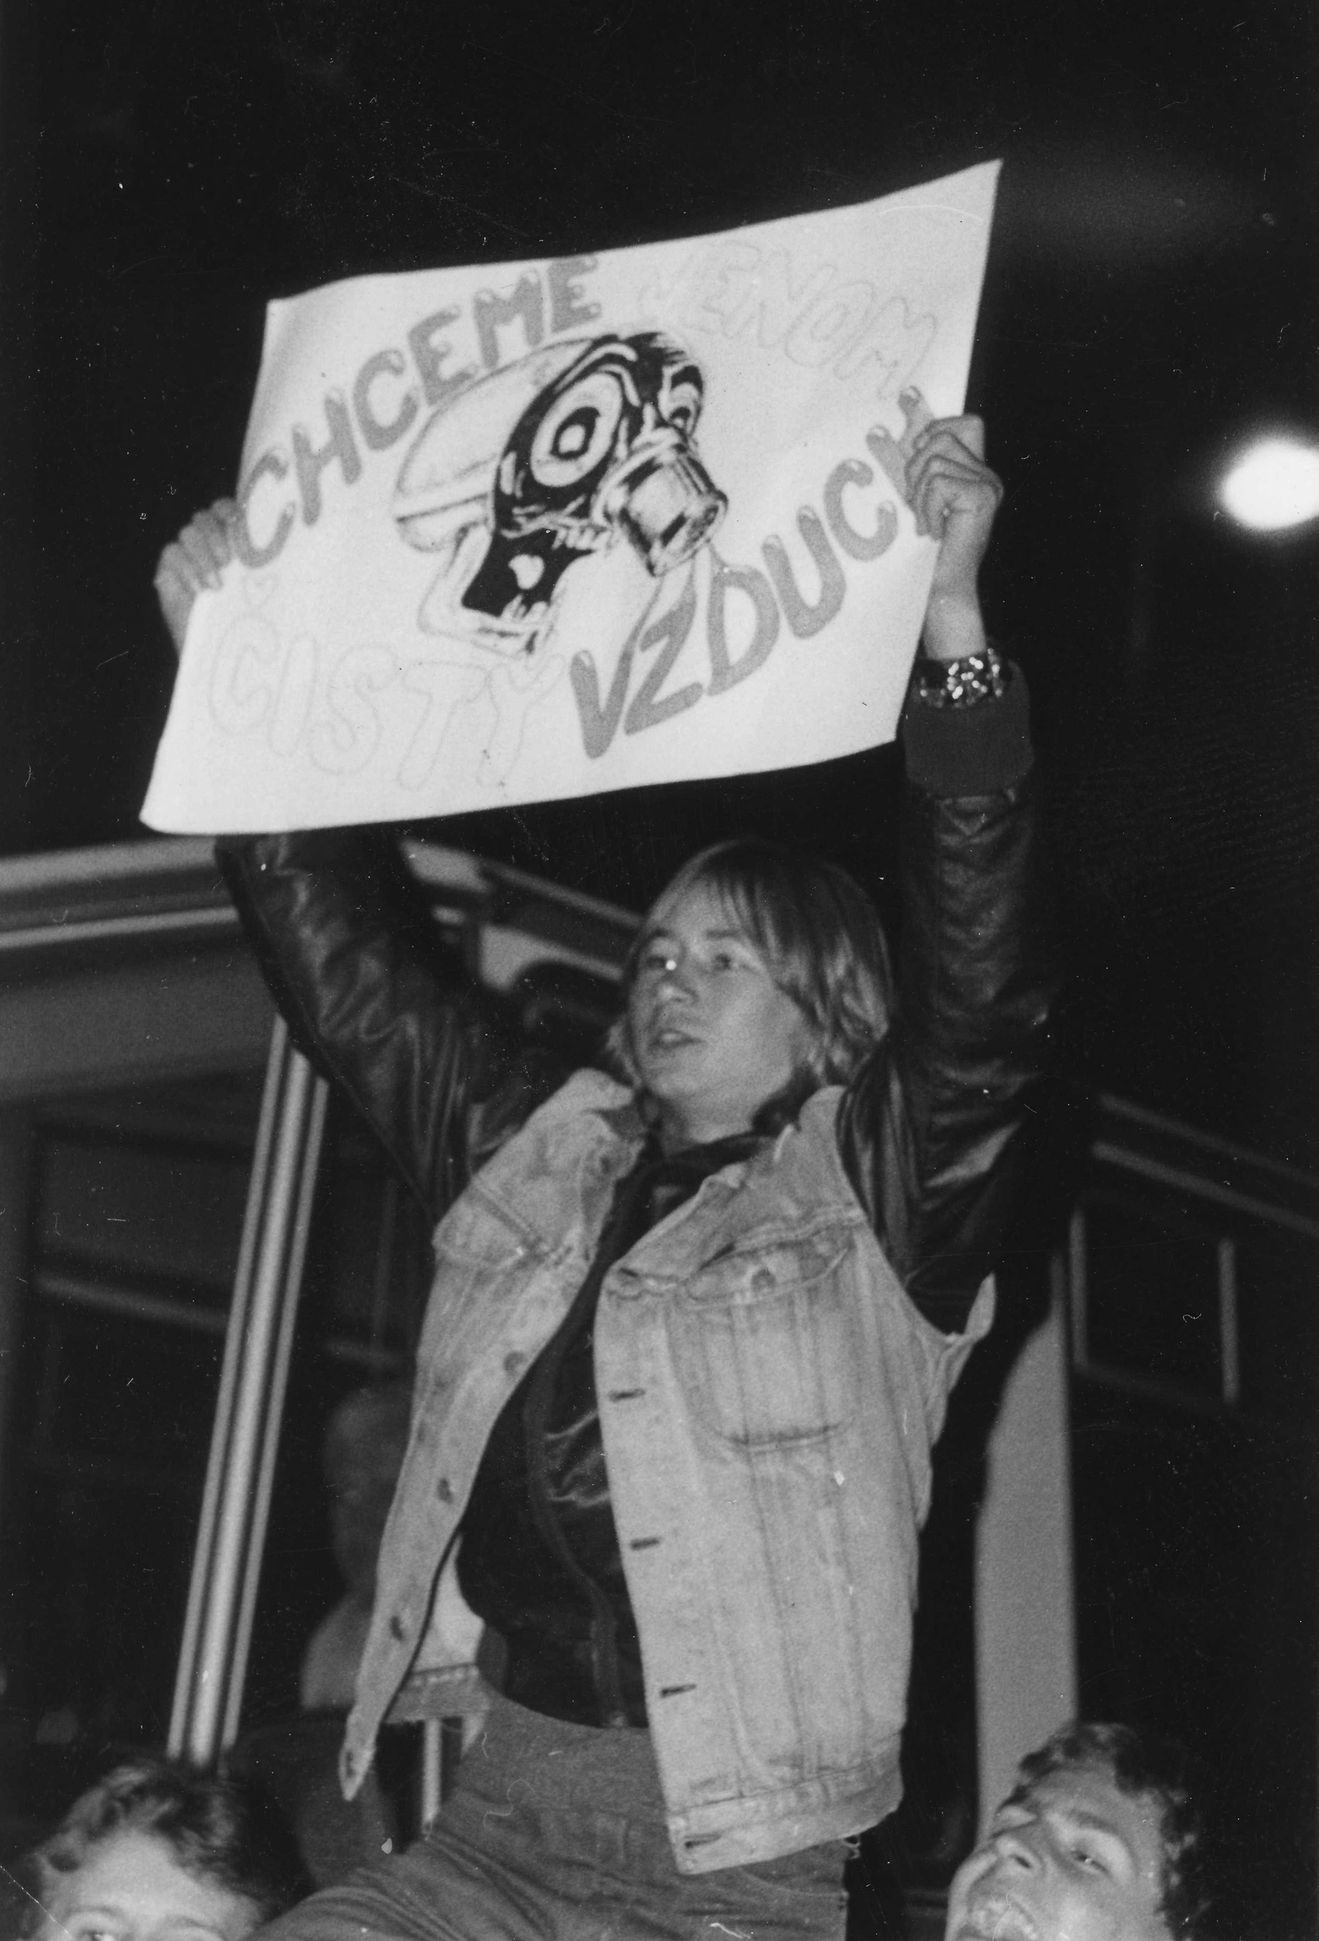 Snímek z demonstrace 13.listopadu 1989 v Teplicích. POchází z archivu Marka Fujdiaka a je součástí knihy o teplických událostech, nazvané Inverze 89.